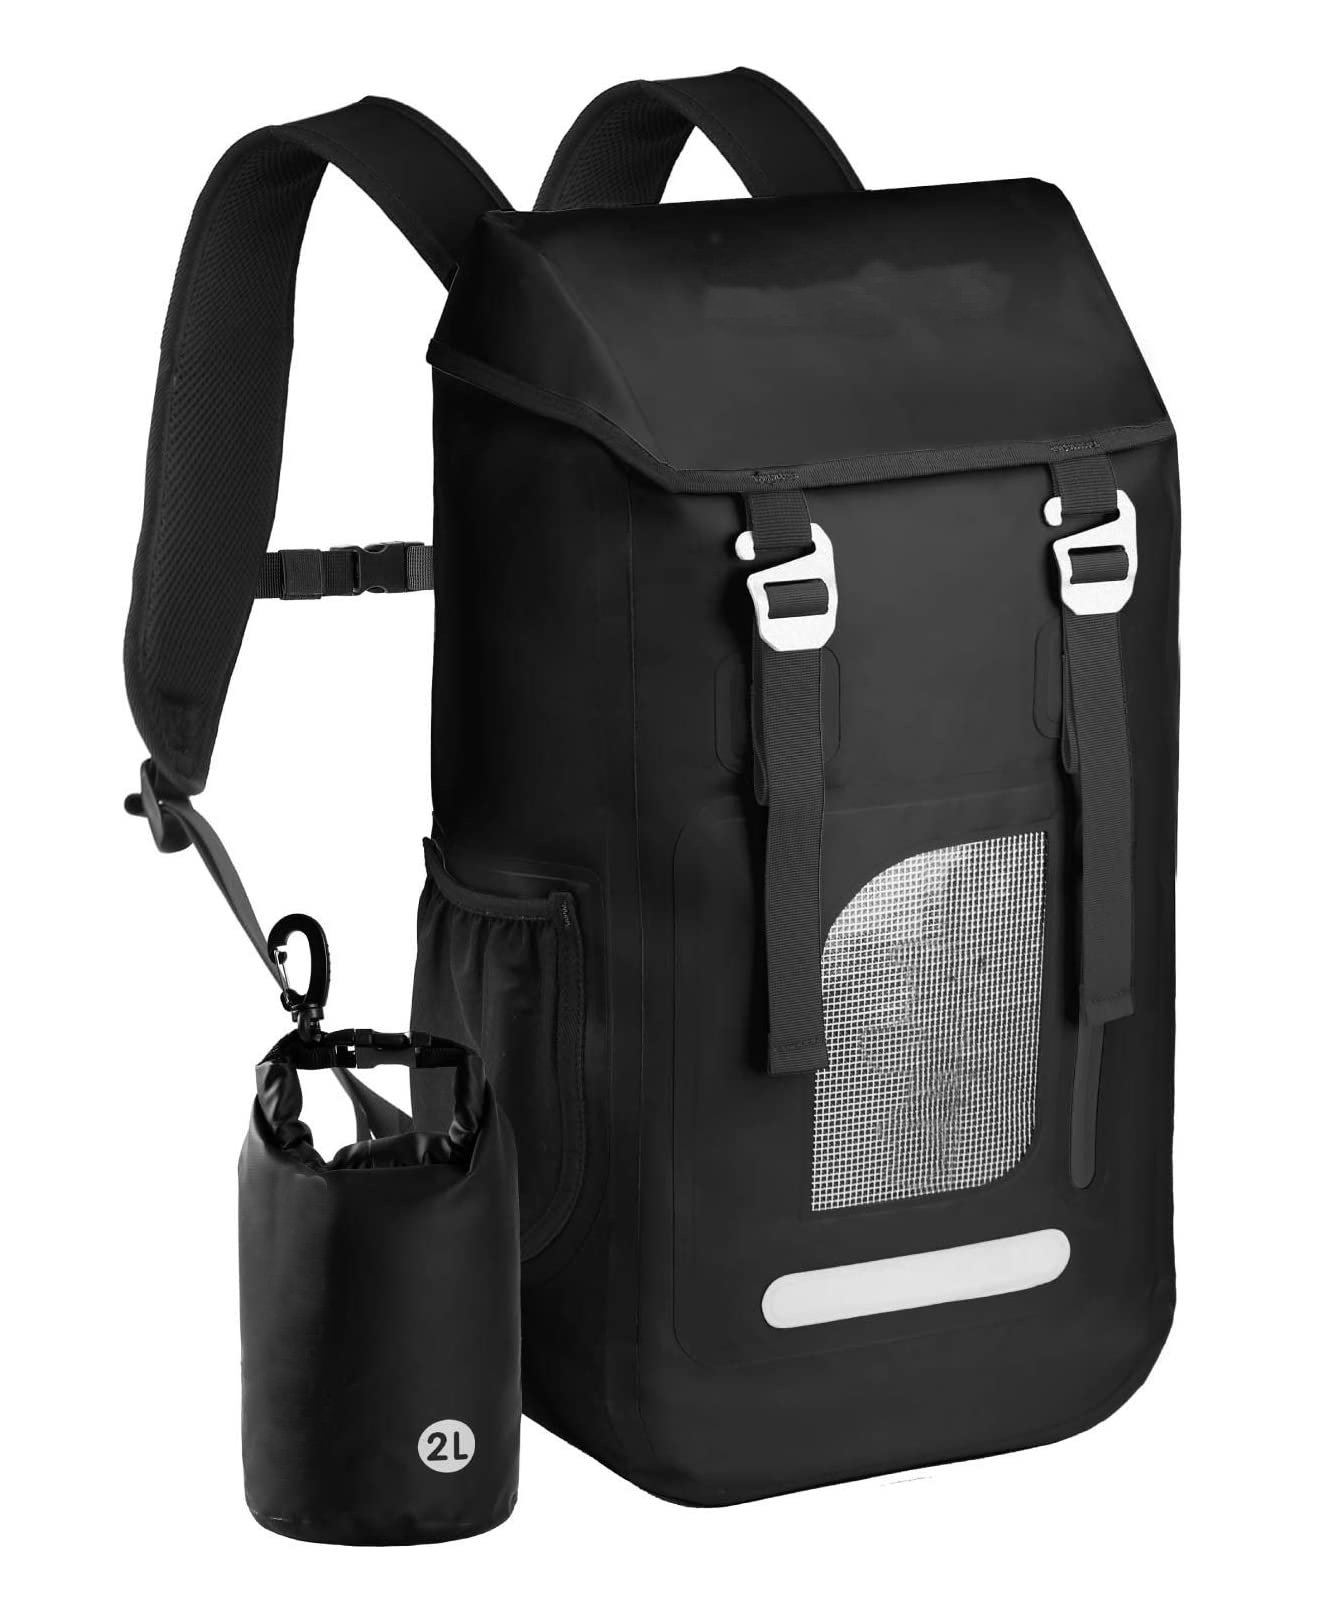 Waterproof Backpack Dry Bag 30L, Dry Backpack Bags Waterproof for Women Men